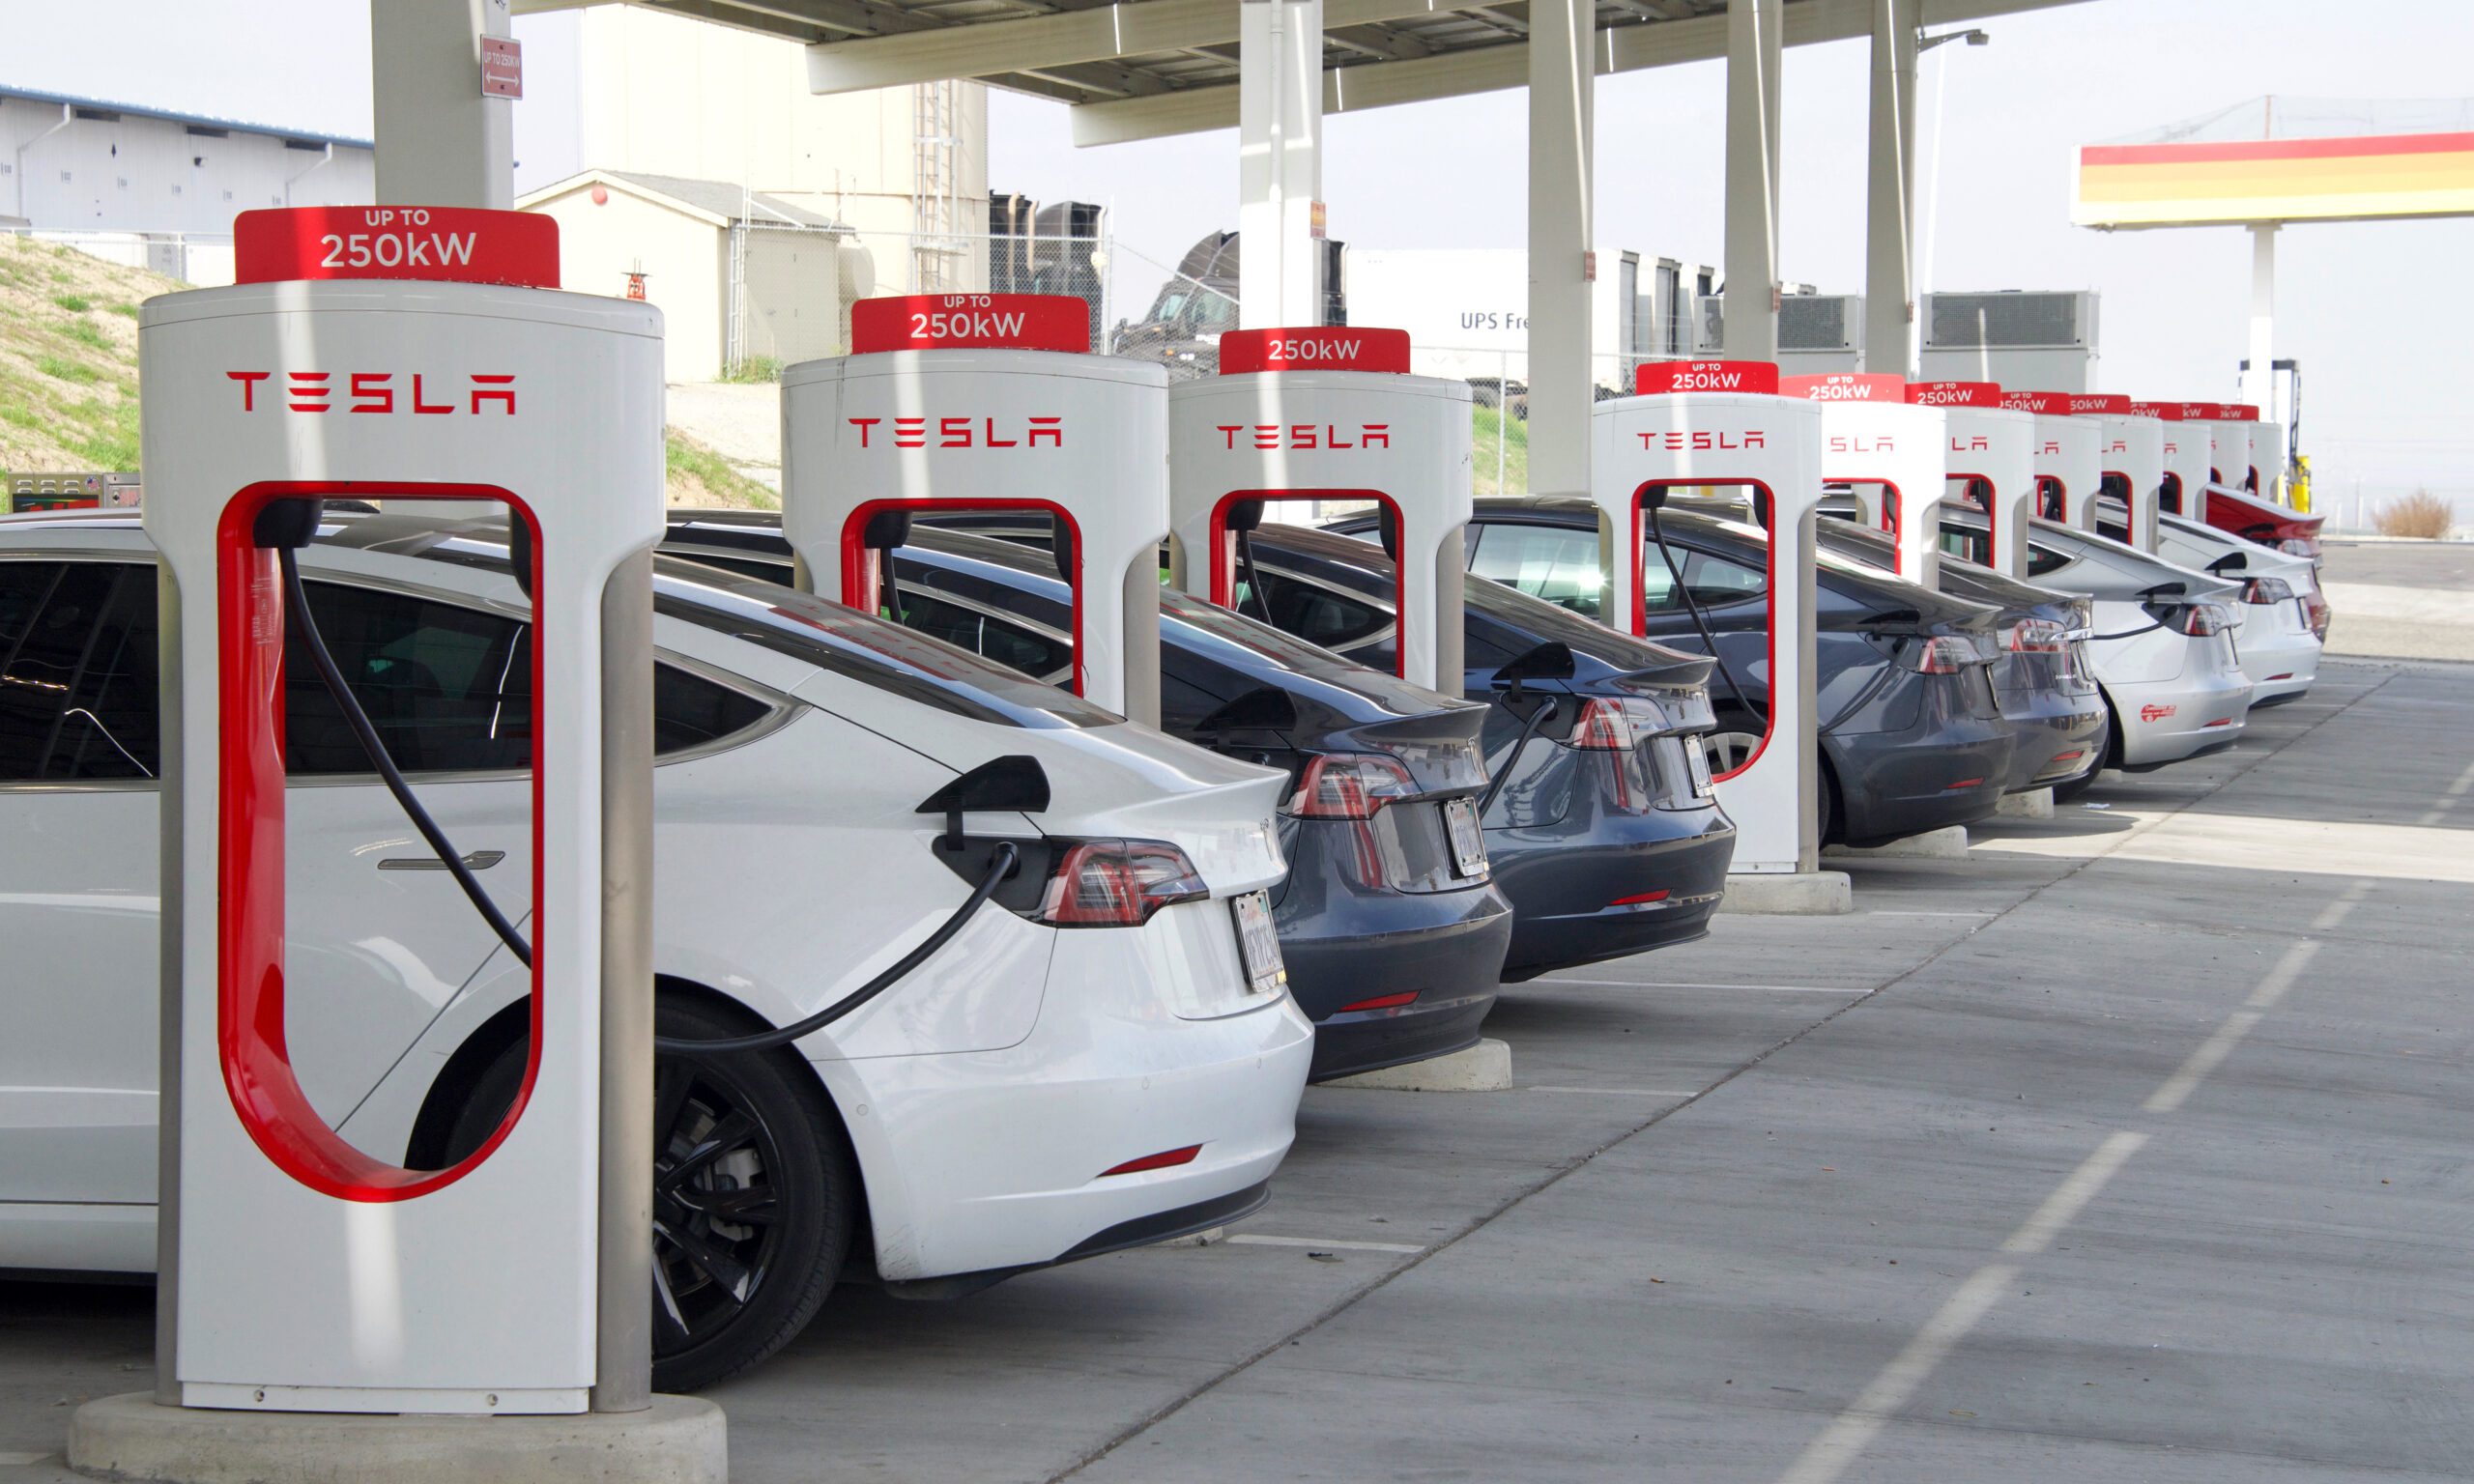 Tesla models charging